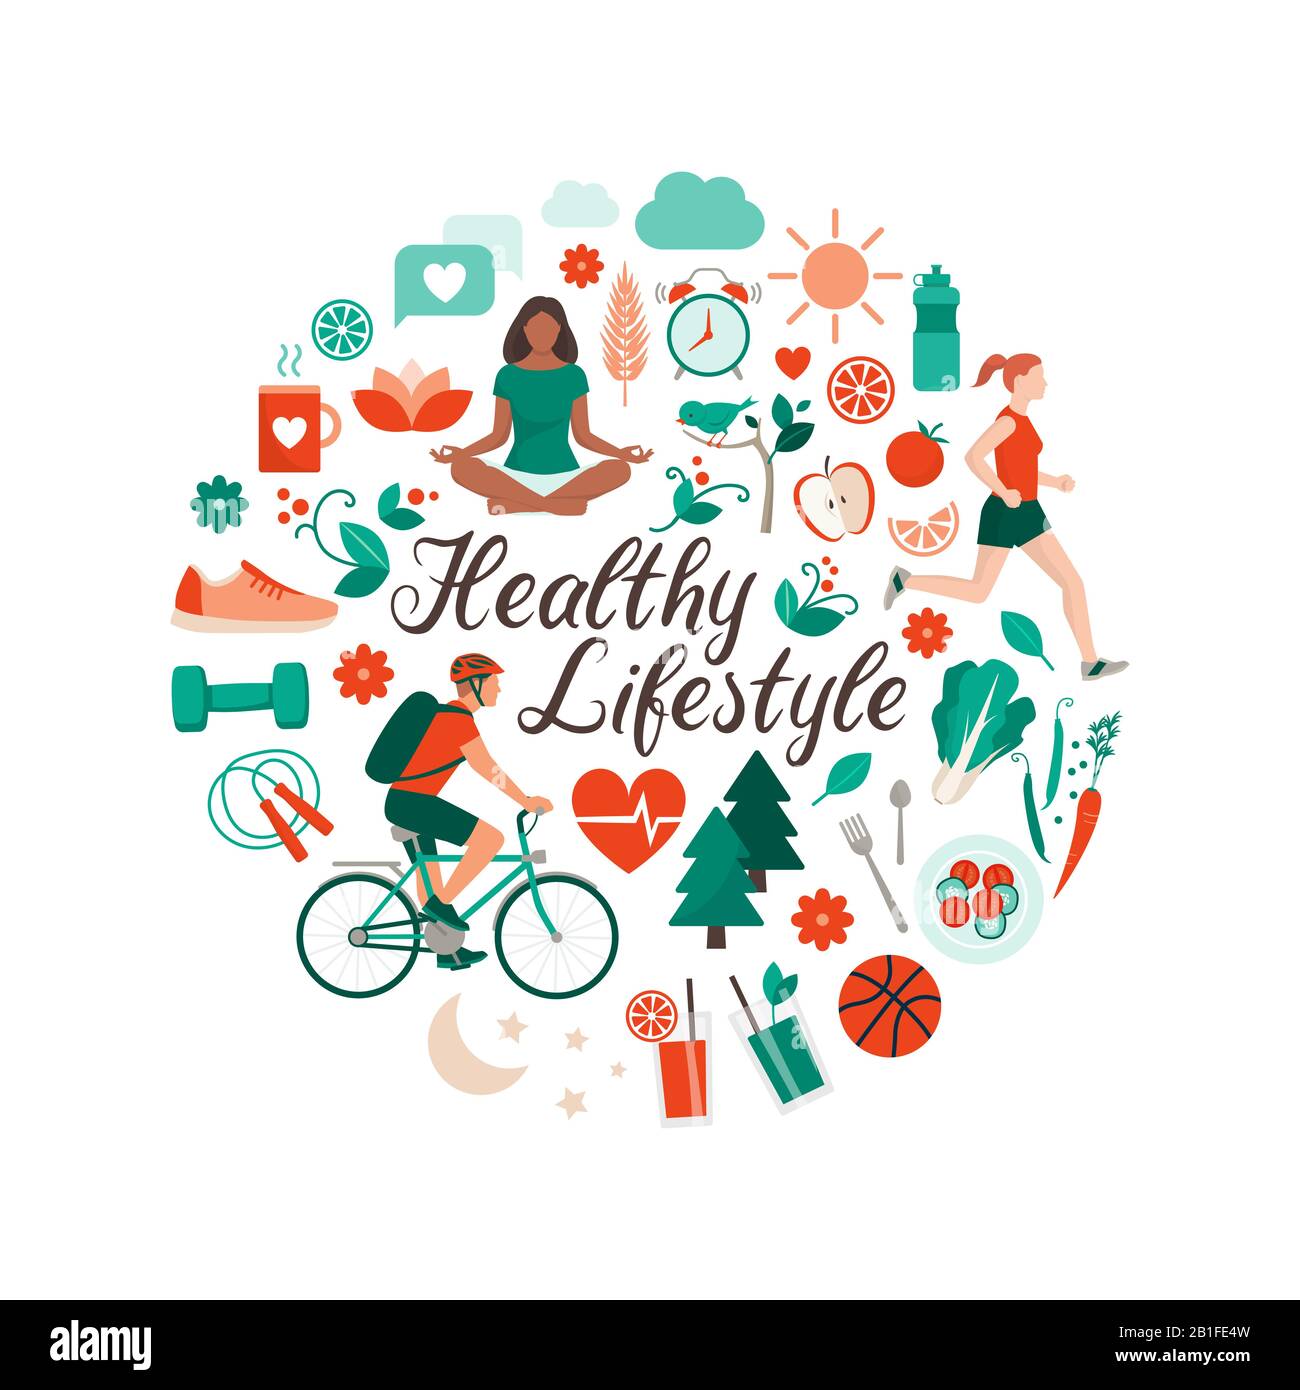 Gesundes Lifestyle- und Selbstpflegekonzept mit kreisförmigen Ikonen für Ernährung, Sport und Natur Stock Vektor